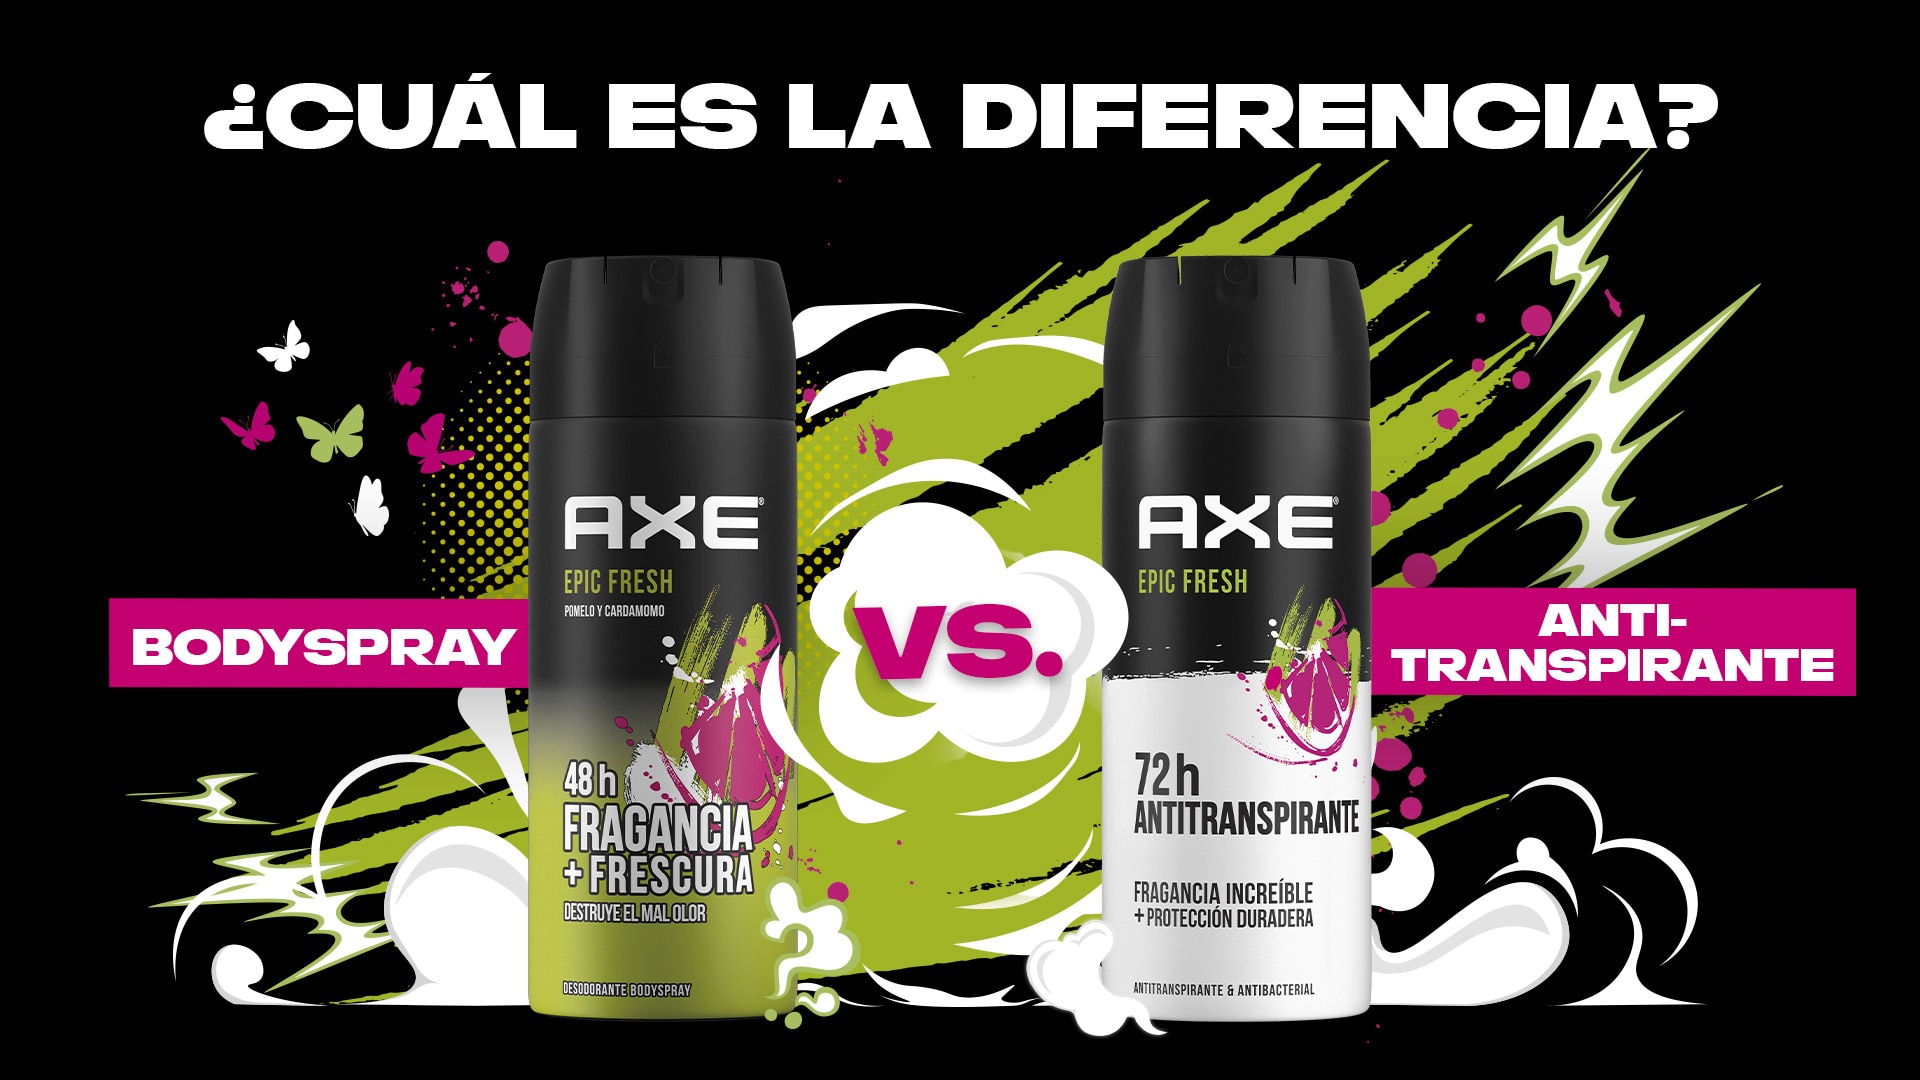 Axe-antitranspirante-y-body spray